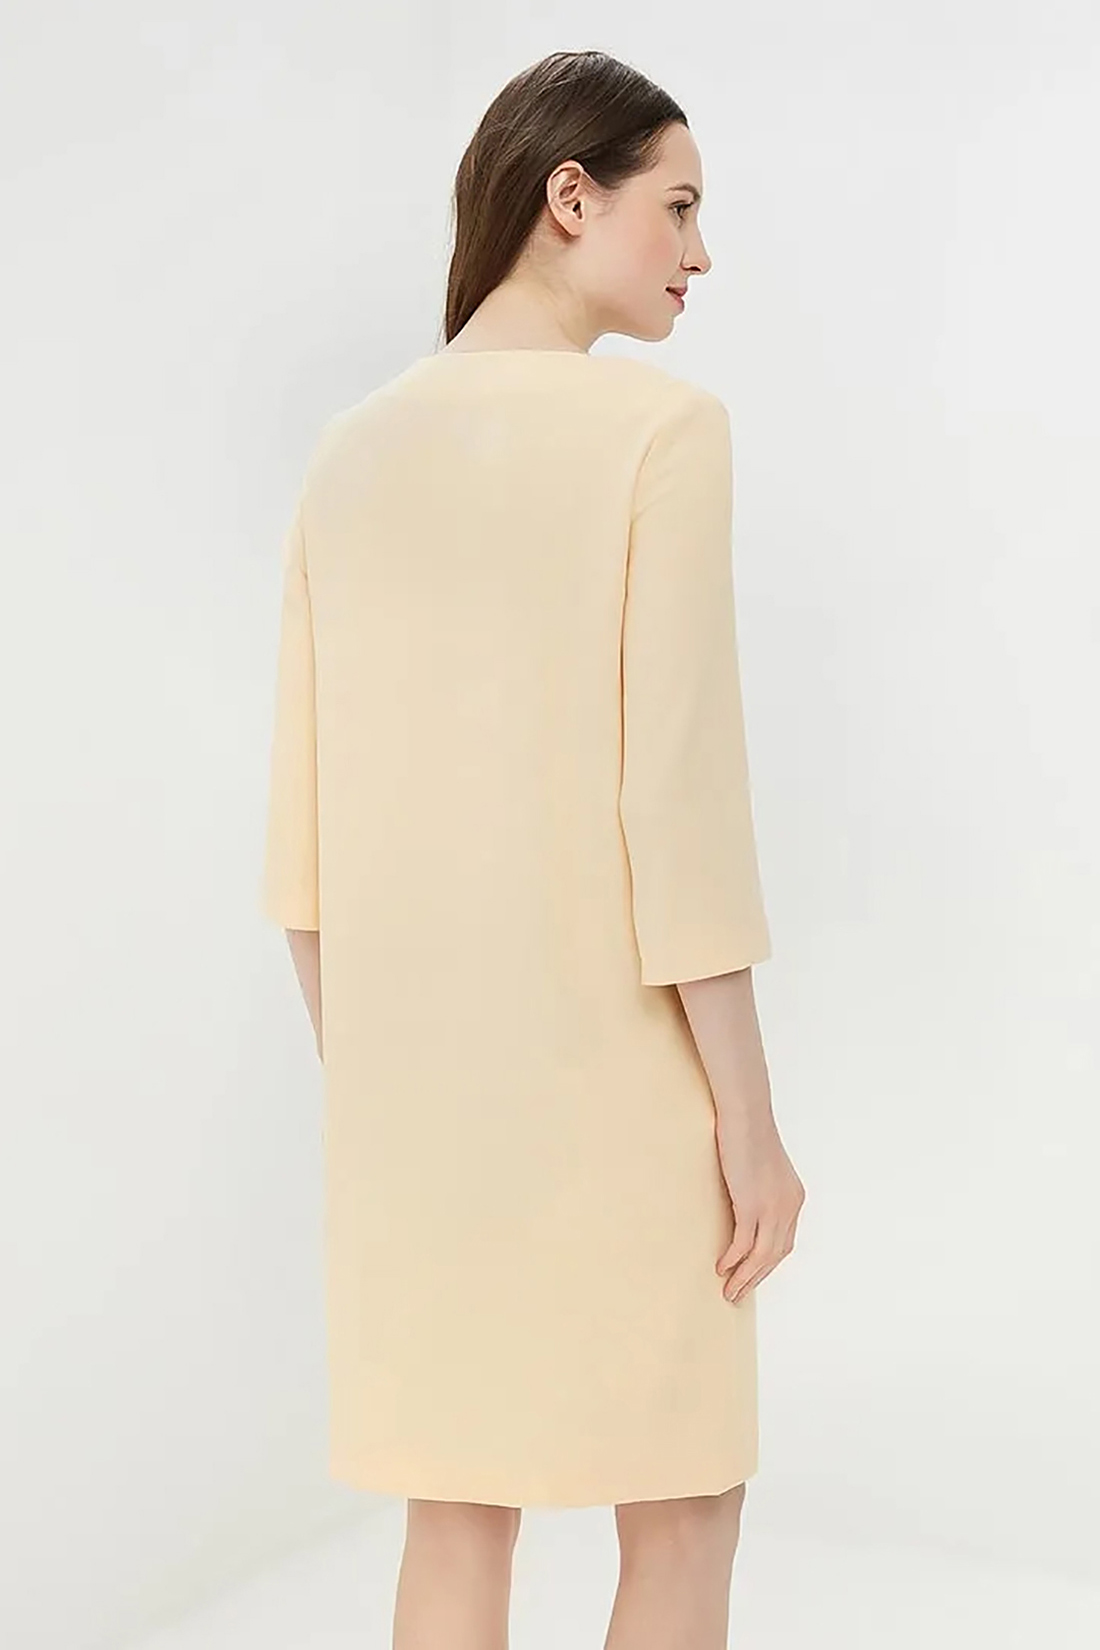 Платье с вырезом-каплей (арт. baon B459011), размер L, цвет желтый Платье с вырезом-каплей (арт. baon B459011) - фото 2